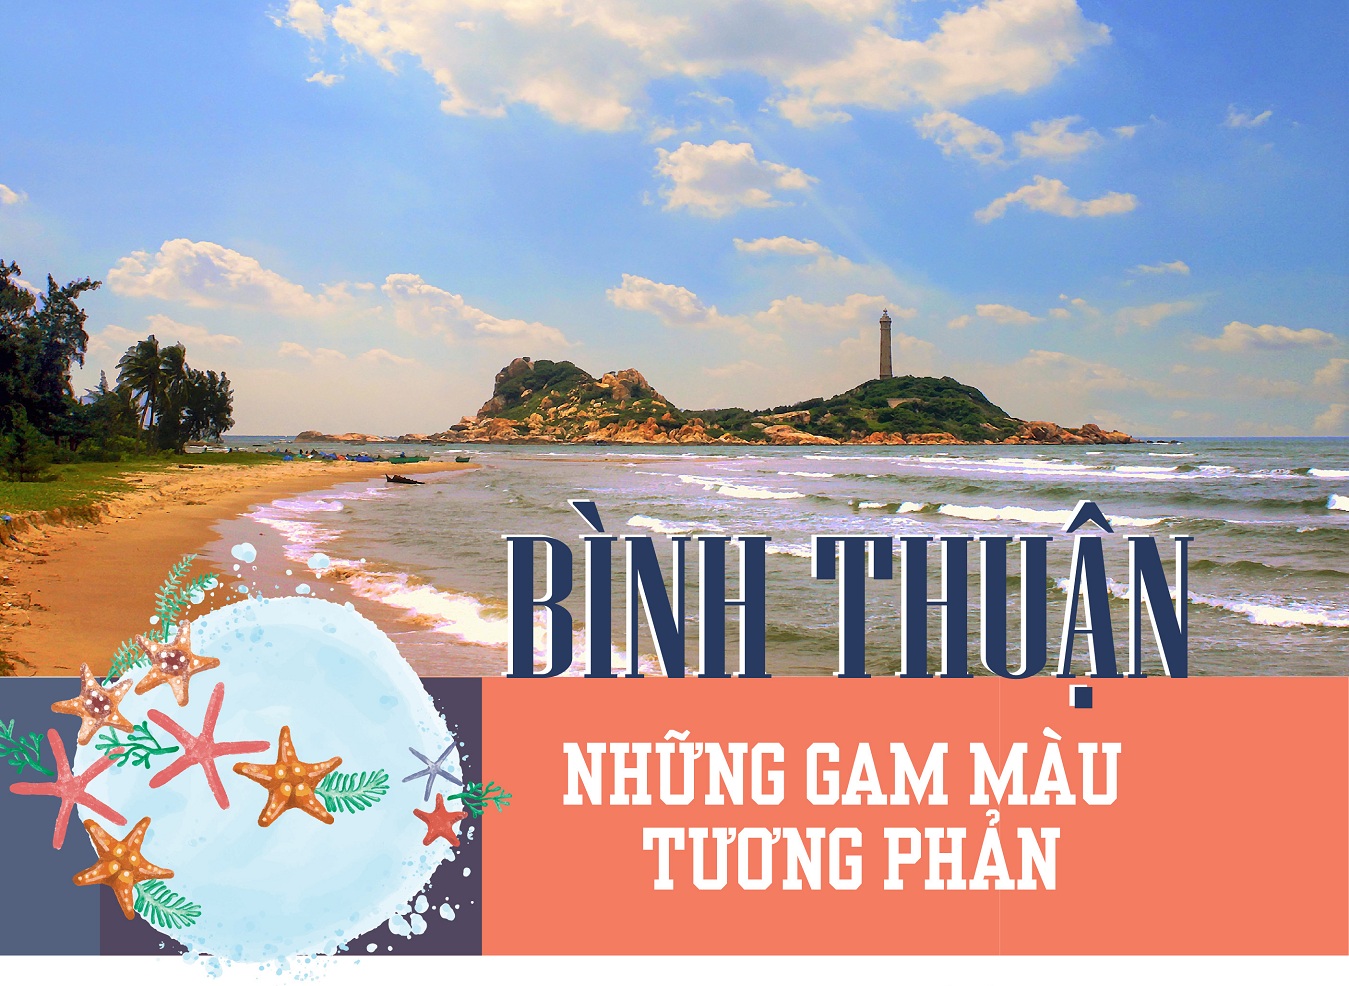 Bất động sản Bình Thuận: Những gam màu tương phản